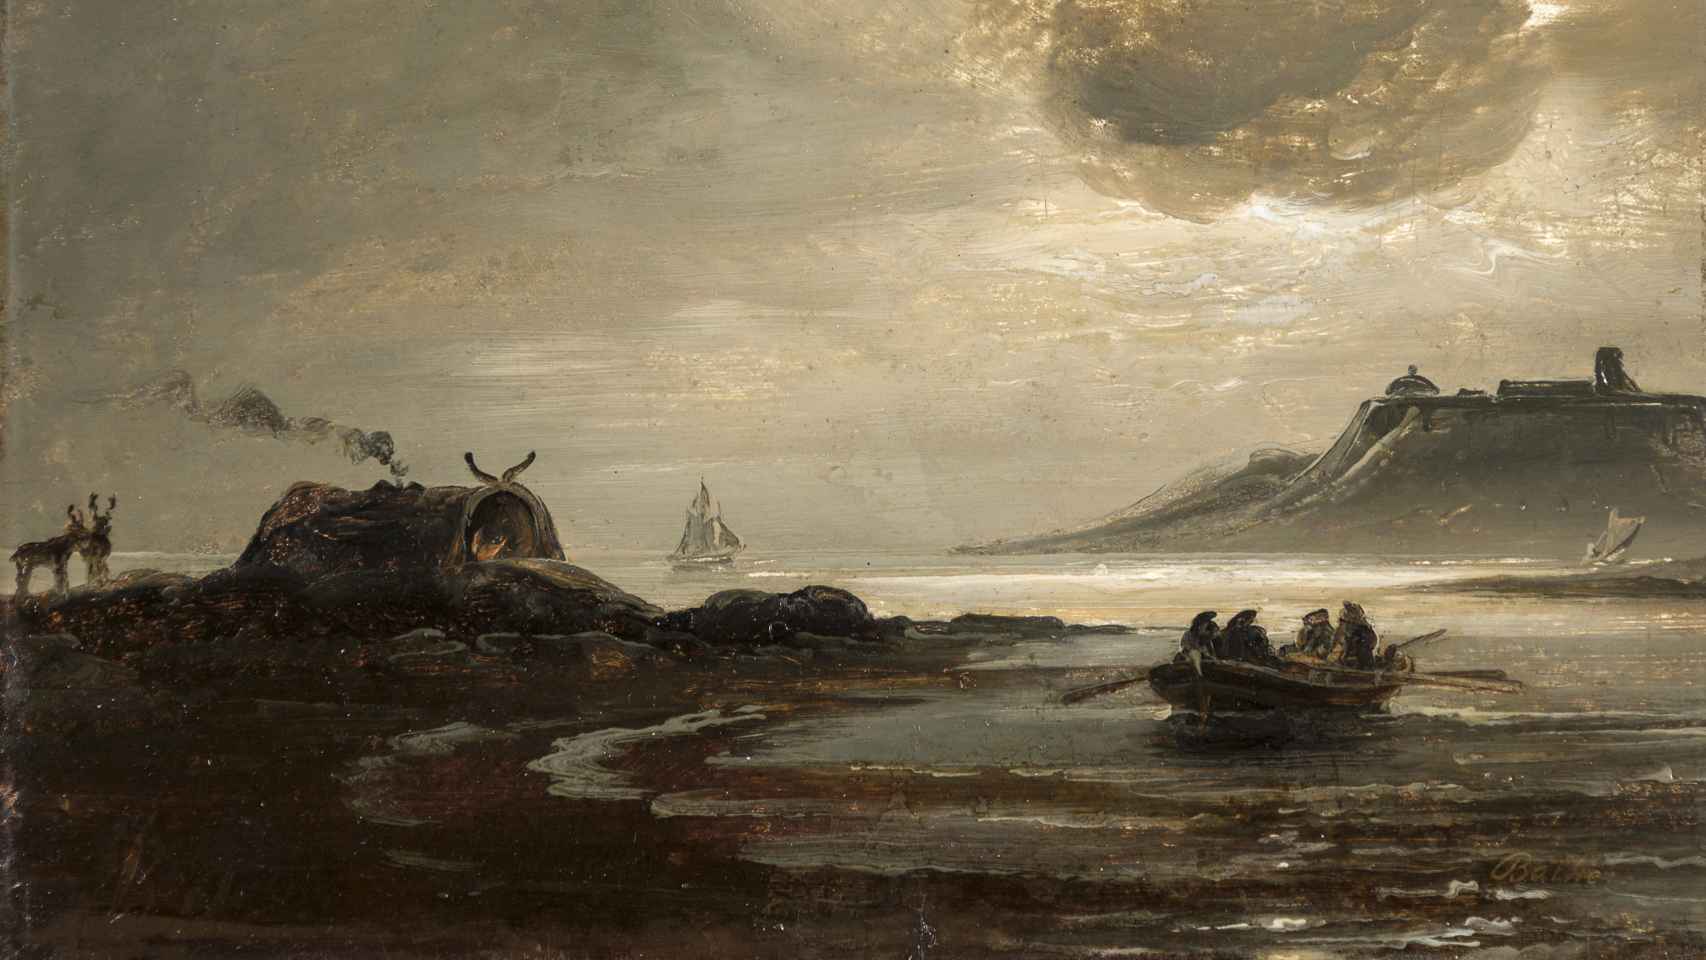 Peder Balke: 'From Vadsø', h. 1840